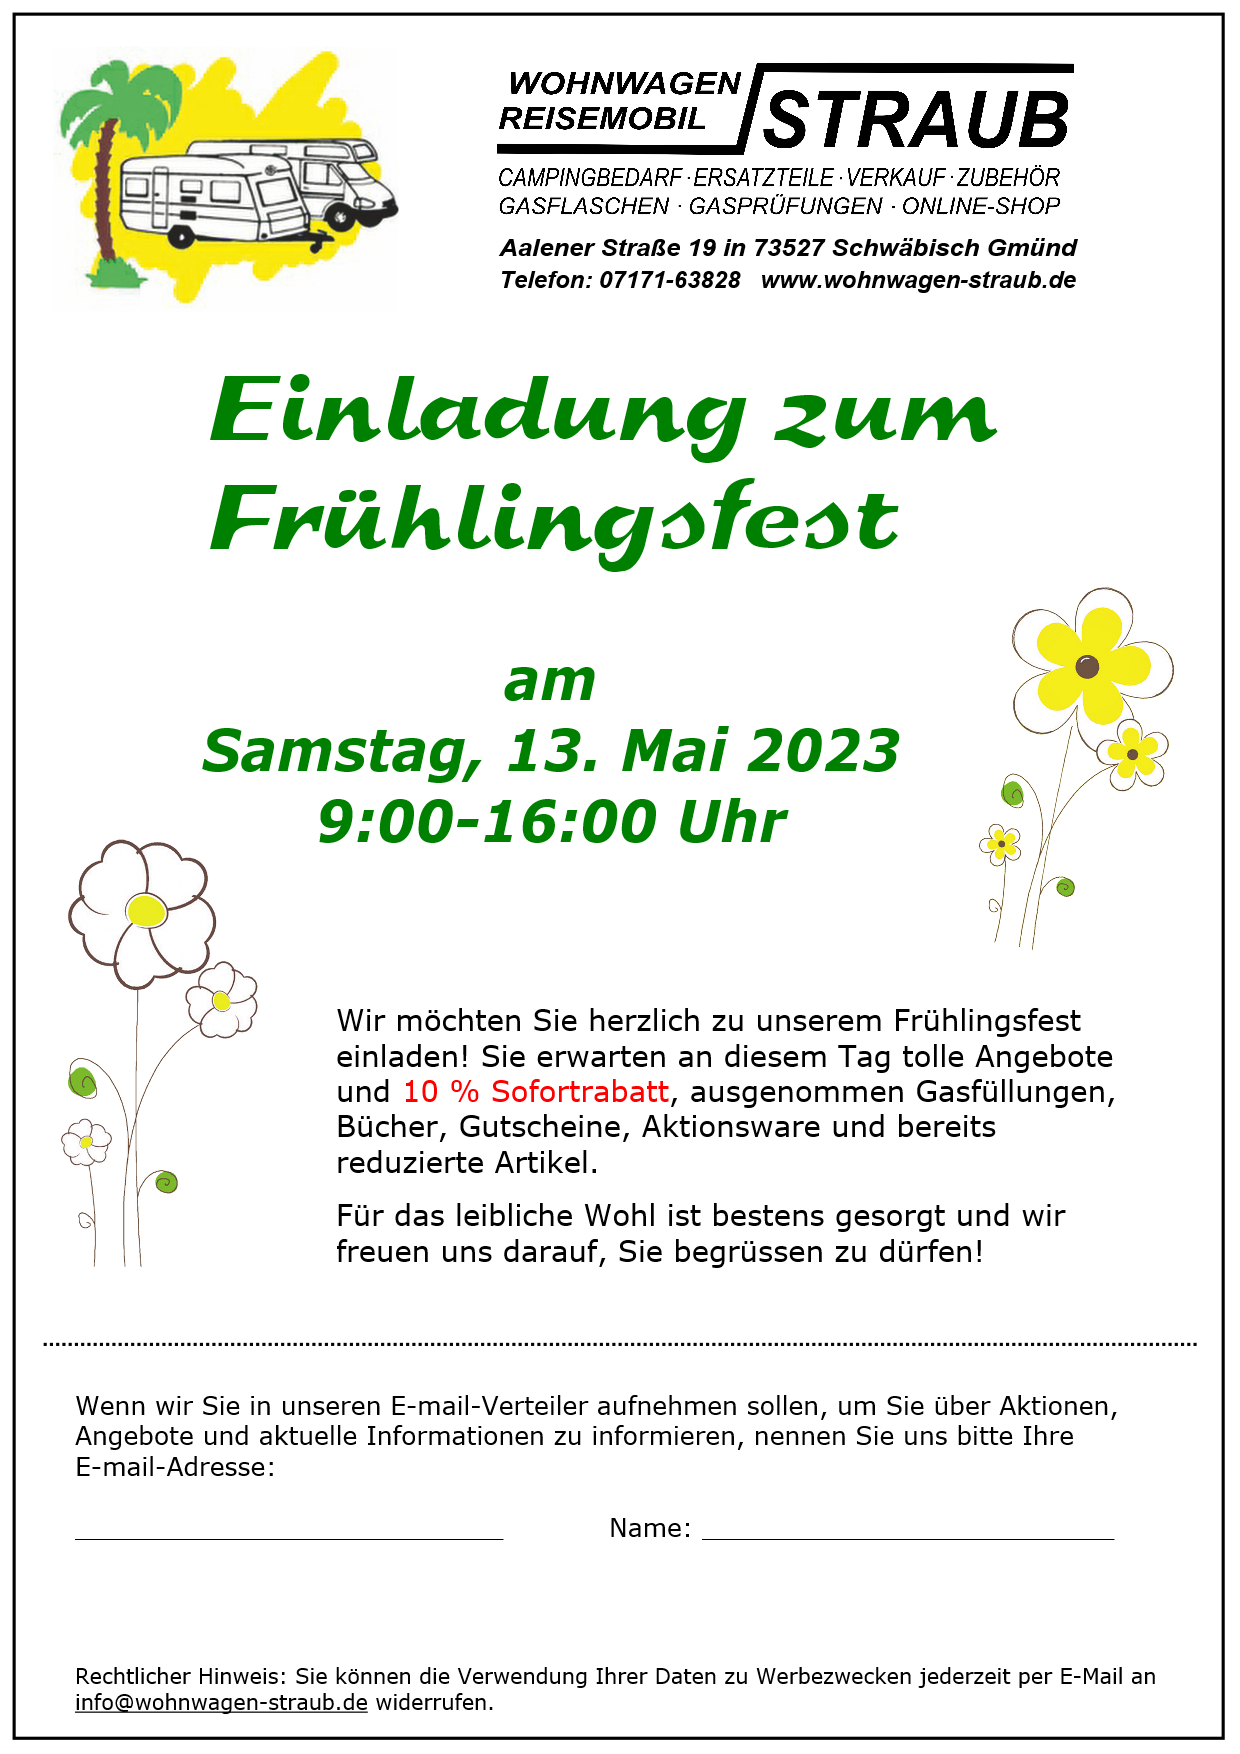 Fruehlingsfest_onlineshop